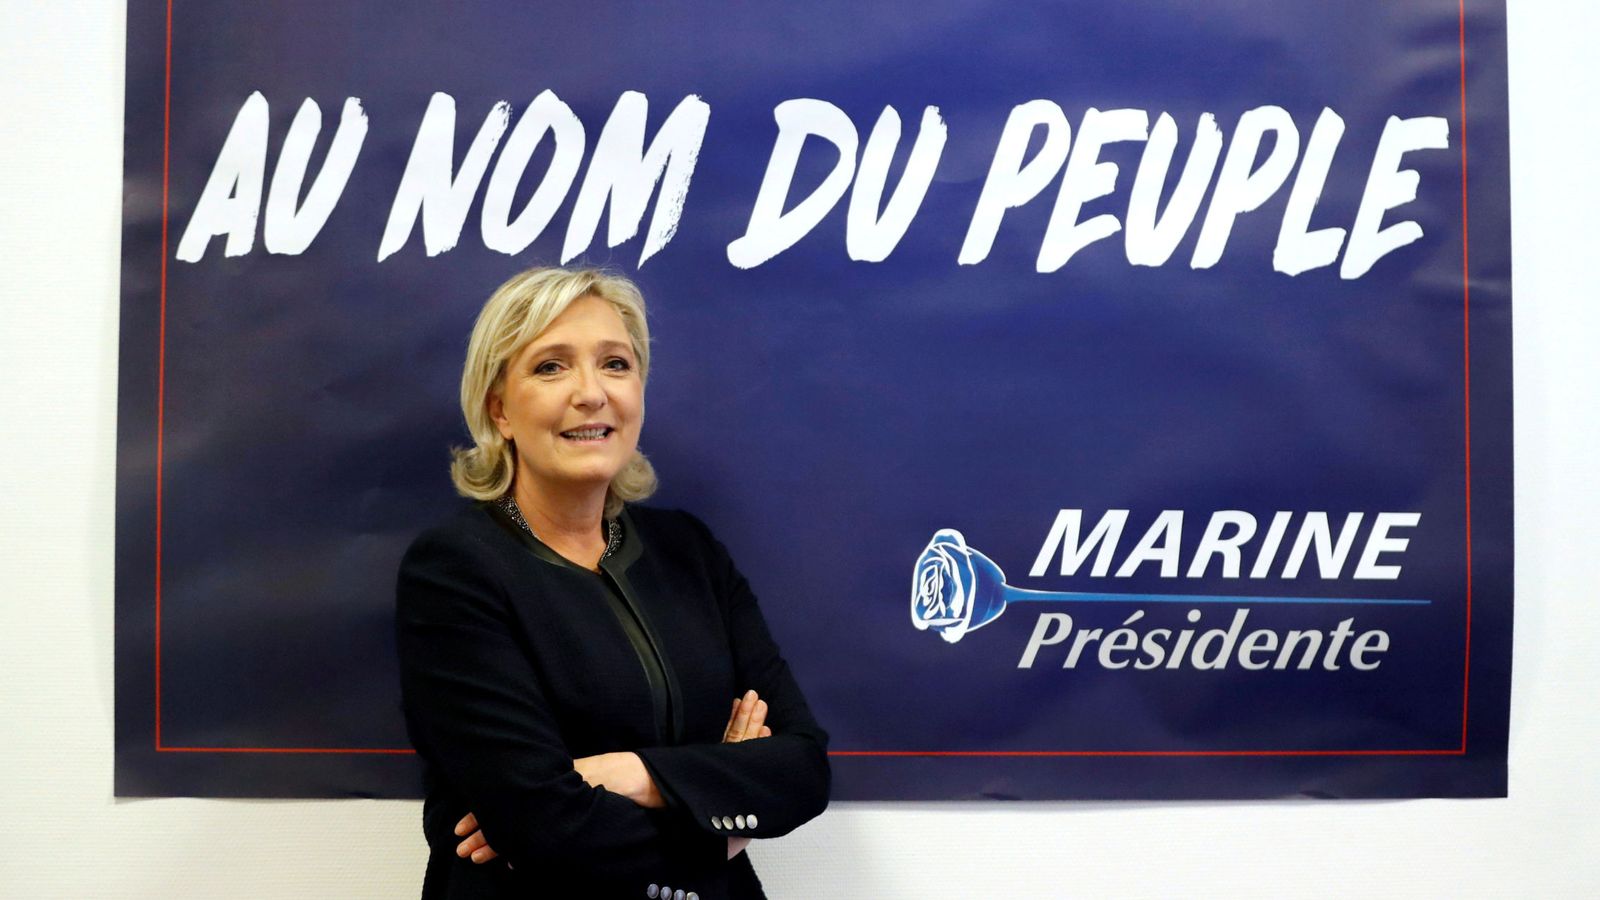 Foto: La líder del ultraderechista Frente Nacional, Marine Le Pen, con un cartel de su campaña electoral. (Reuters)